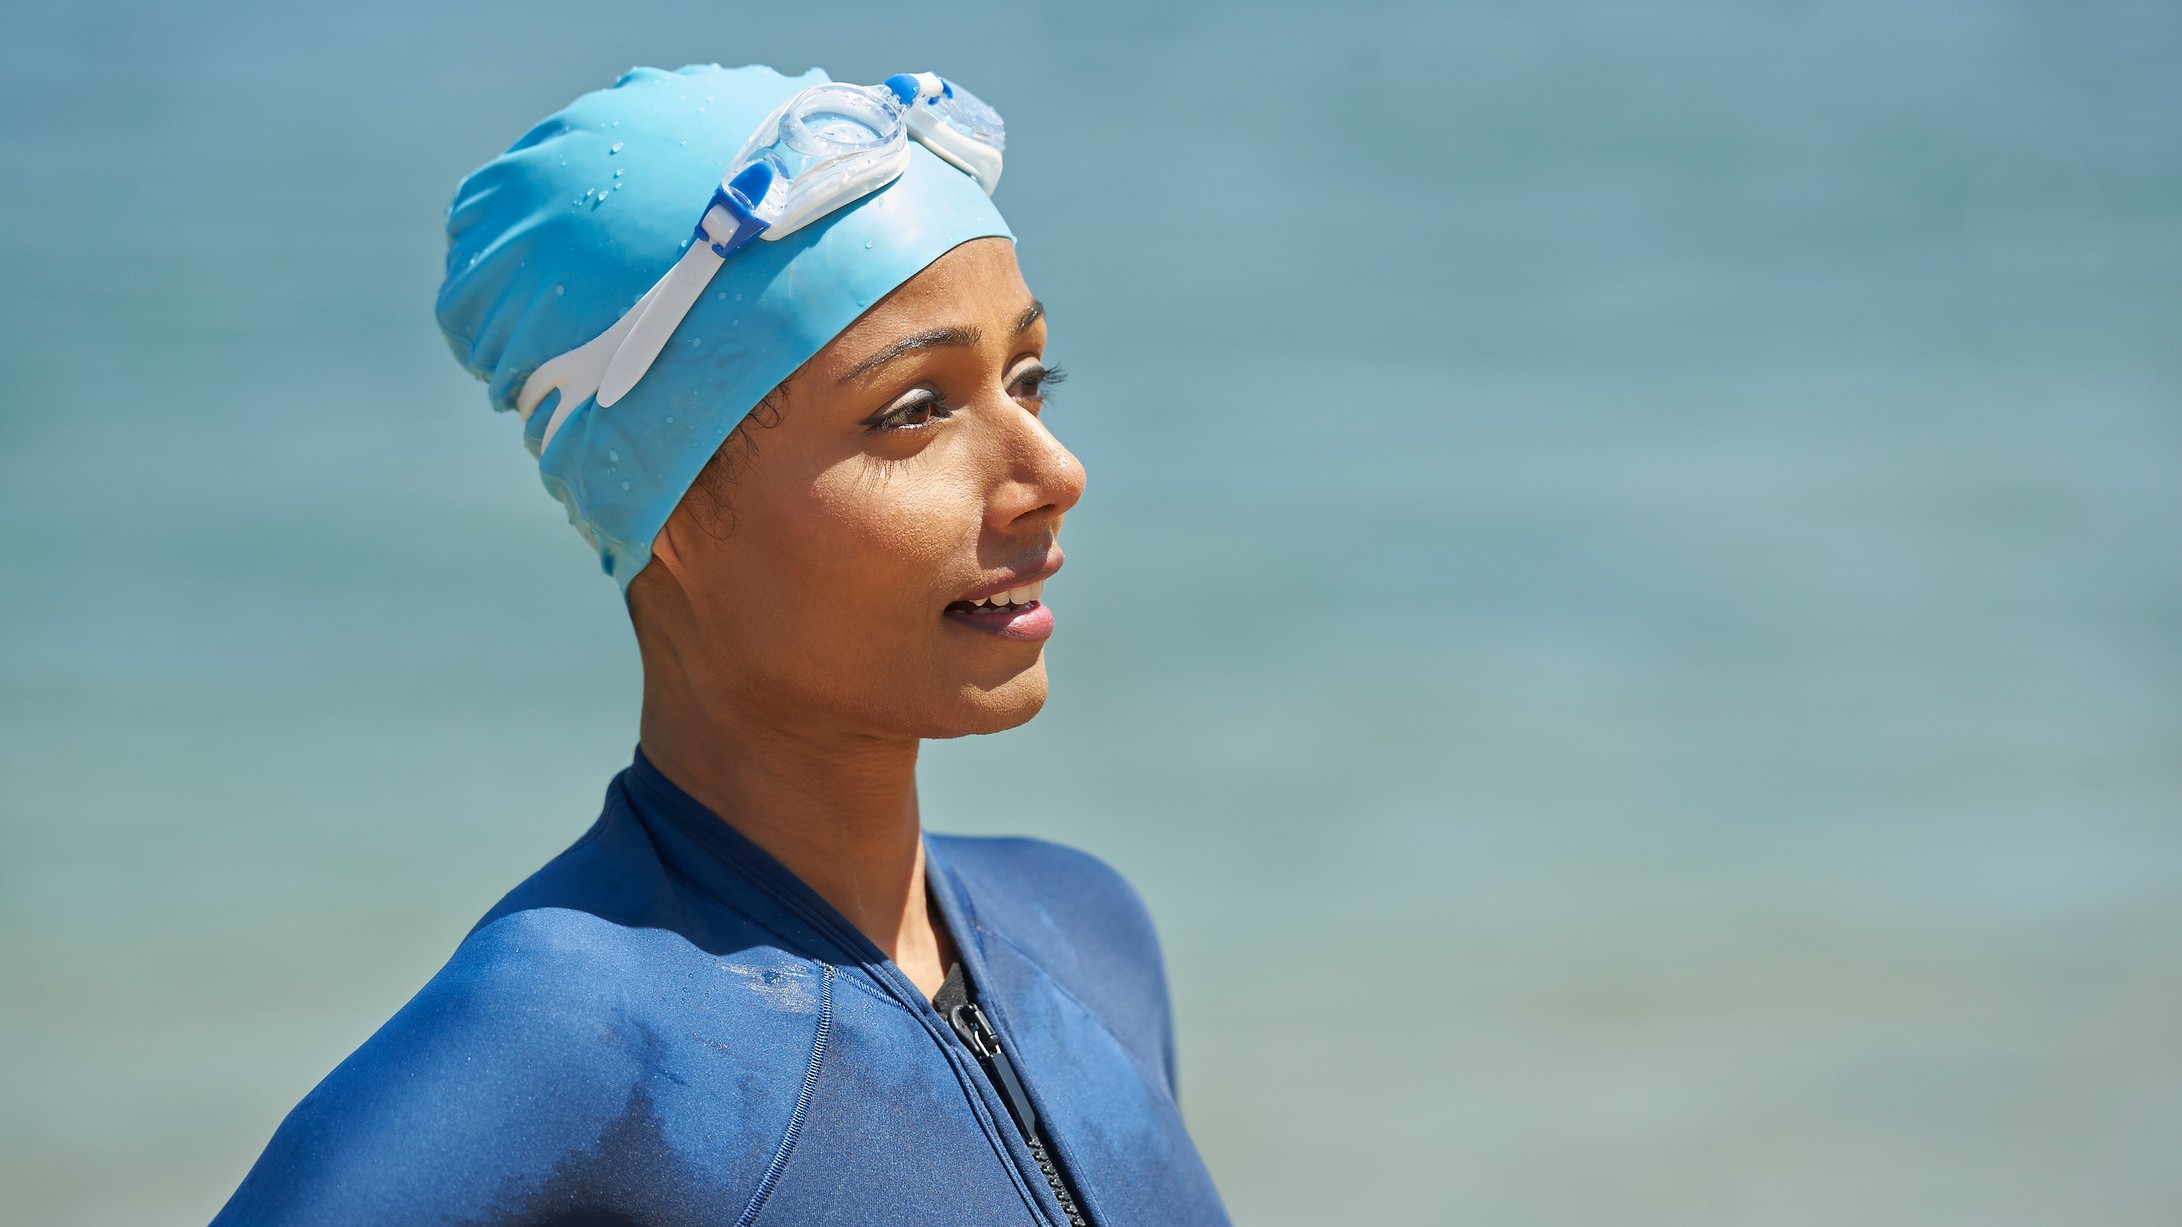 Un nadador se para frente a un cuerpo de agua natural.  Lleva un gorro de baño en la cabeza y lleva un traje de baño.  Ambos son diferentes tonos de azul.